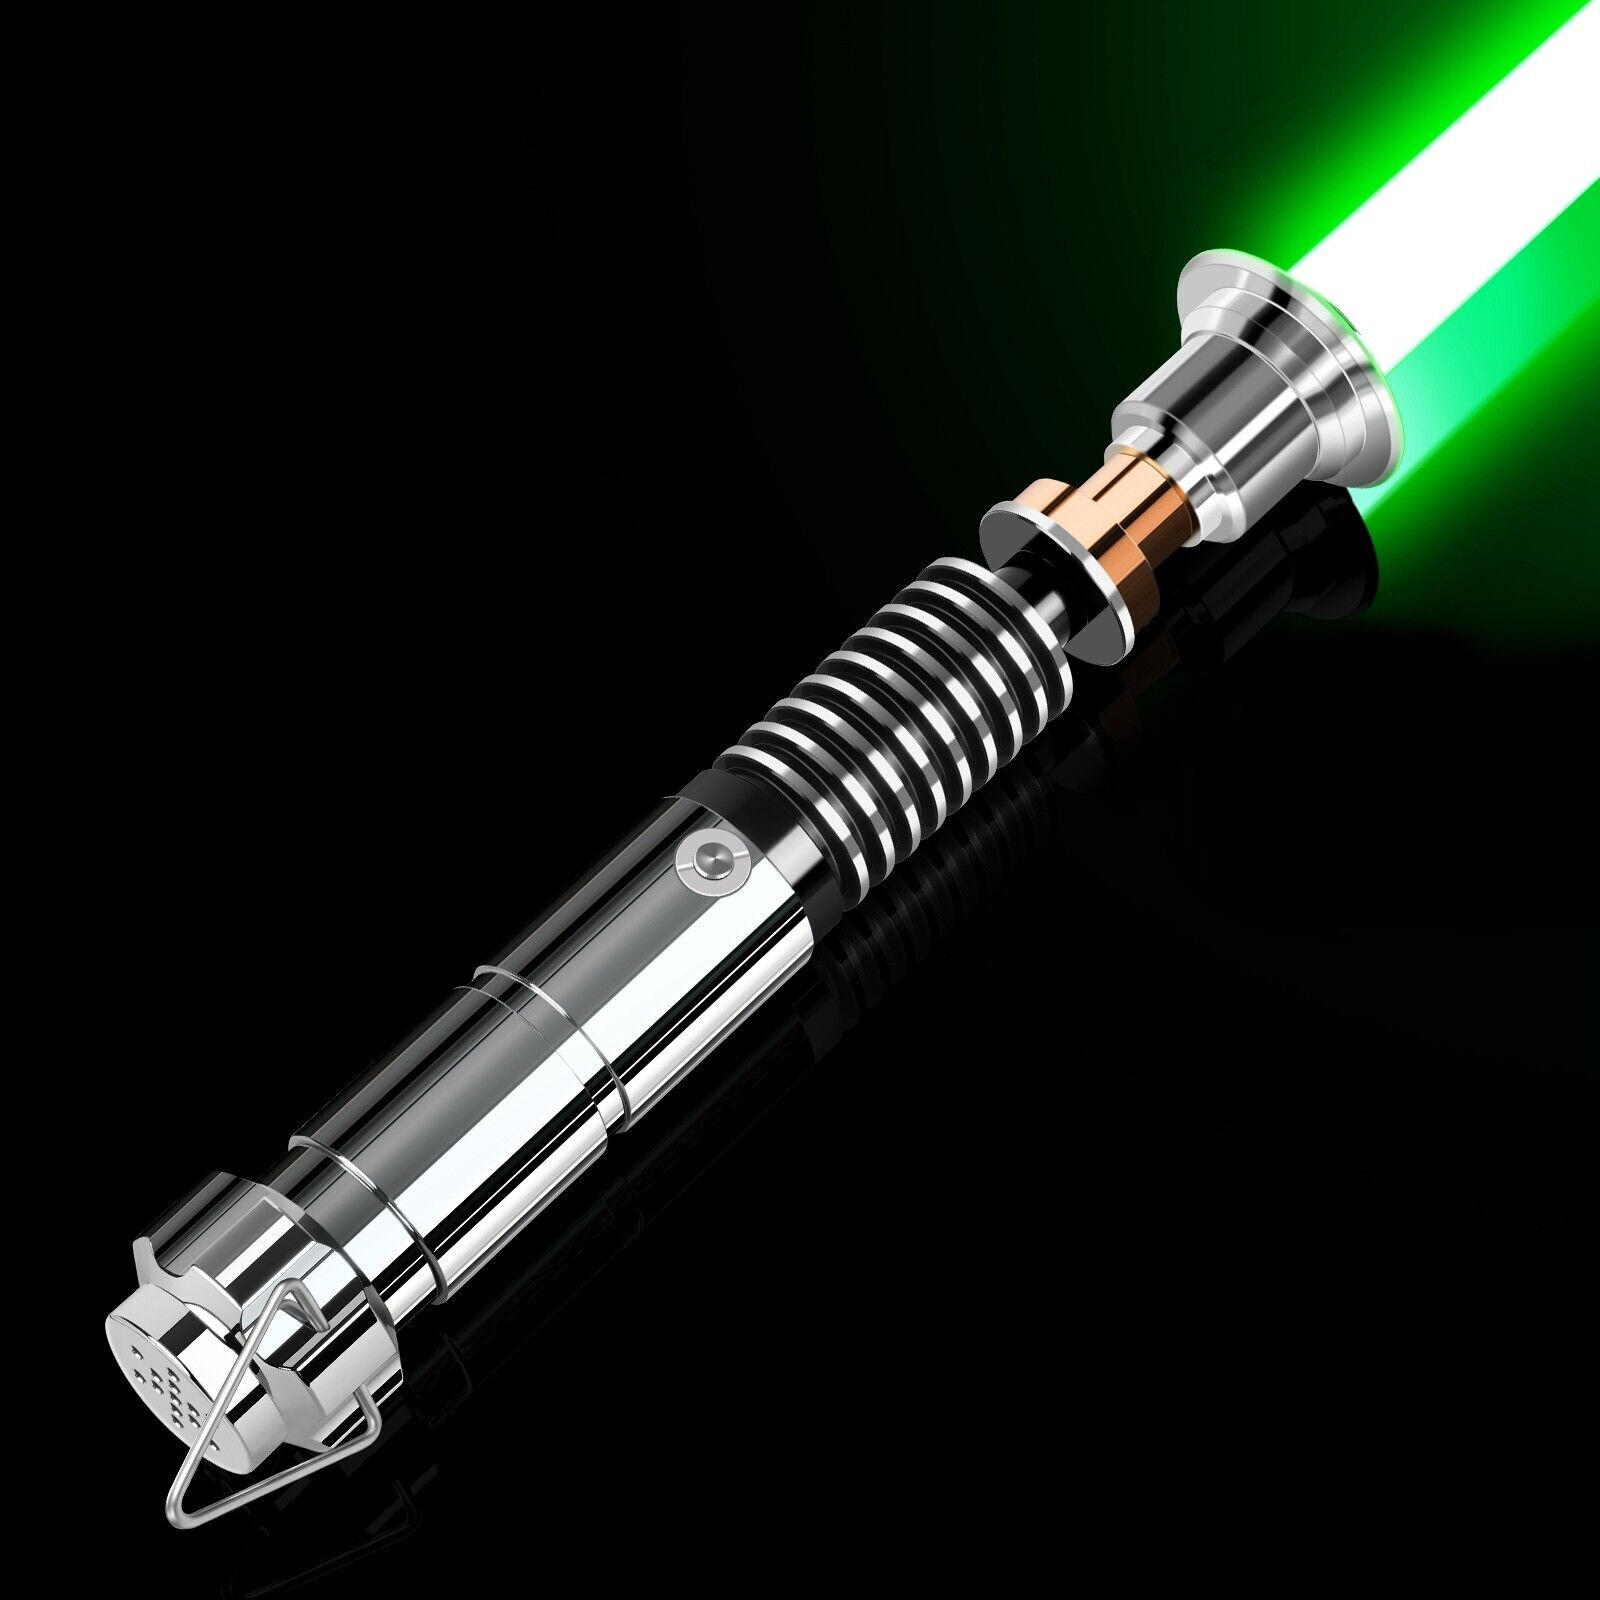 Star Wars luke lightsaber Motion Control RGB 3.0 Lightsaber Dueling DHL